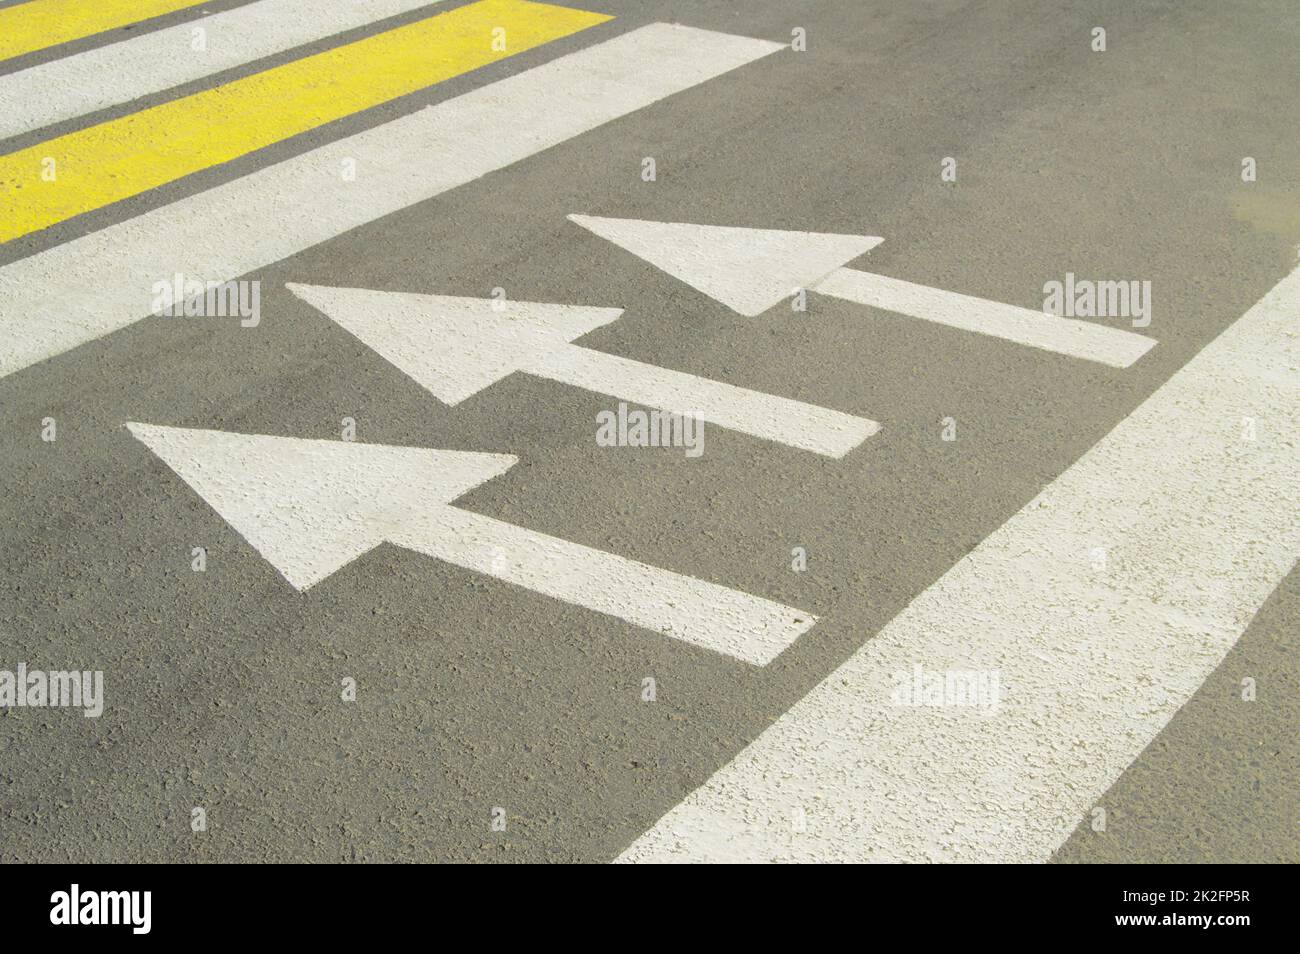 Carretera de asfalto con señal de flecha muestra la dirección del movimiento Foto de stock